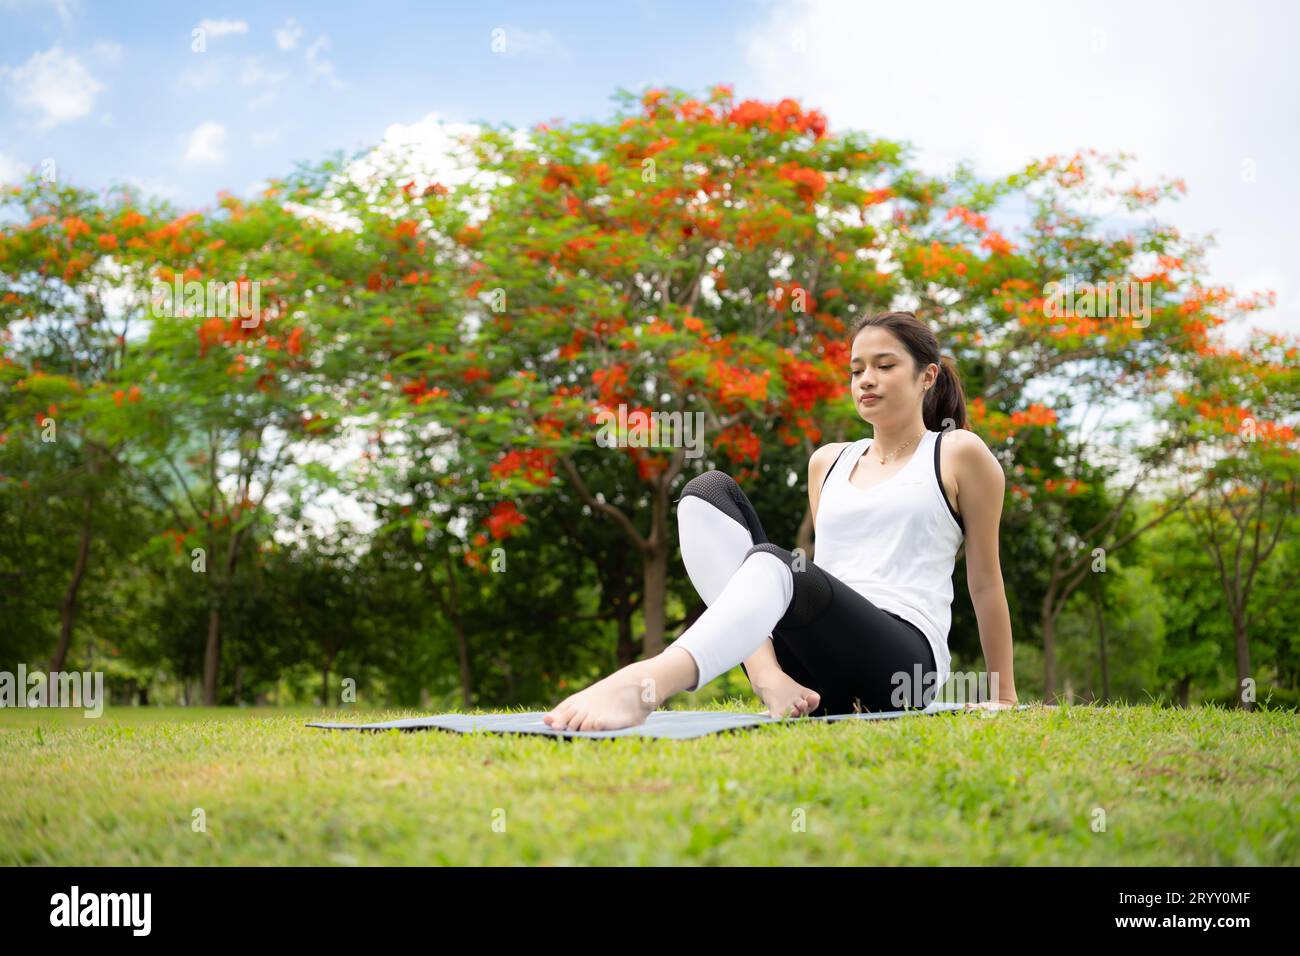 Jeune femme avec des activités de plein air dans le parc de la ville, le yoga est son activité choisie. Banque D'Images